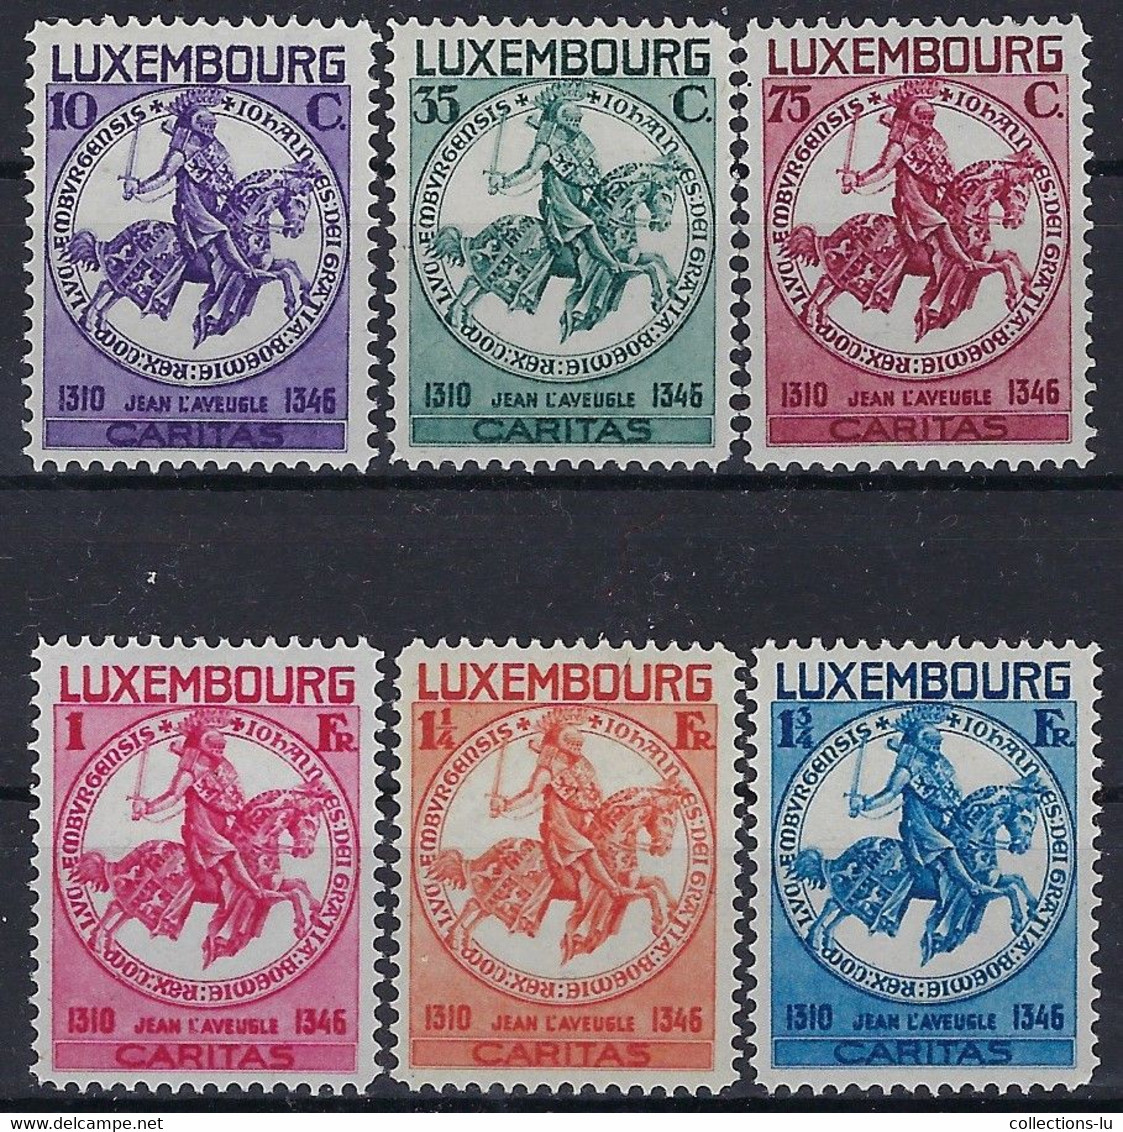 Luxembourg - Luxemburg - Timbres  1934  CARITAS   Jean L'Aveugle  Série MH*  VC.140,- - Oblitérés